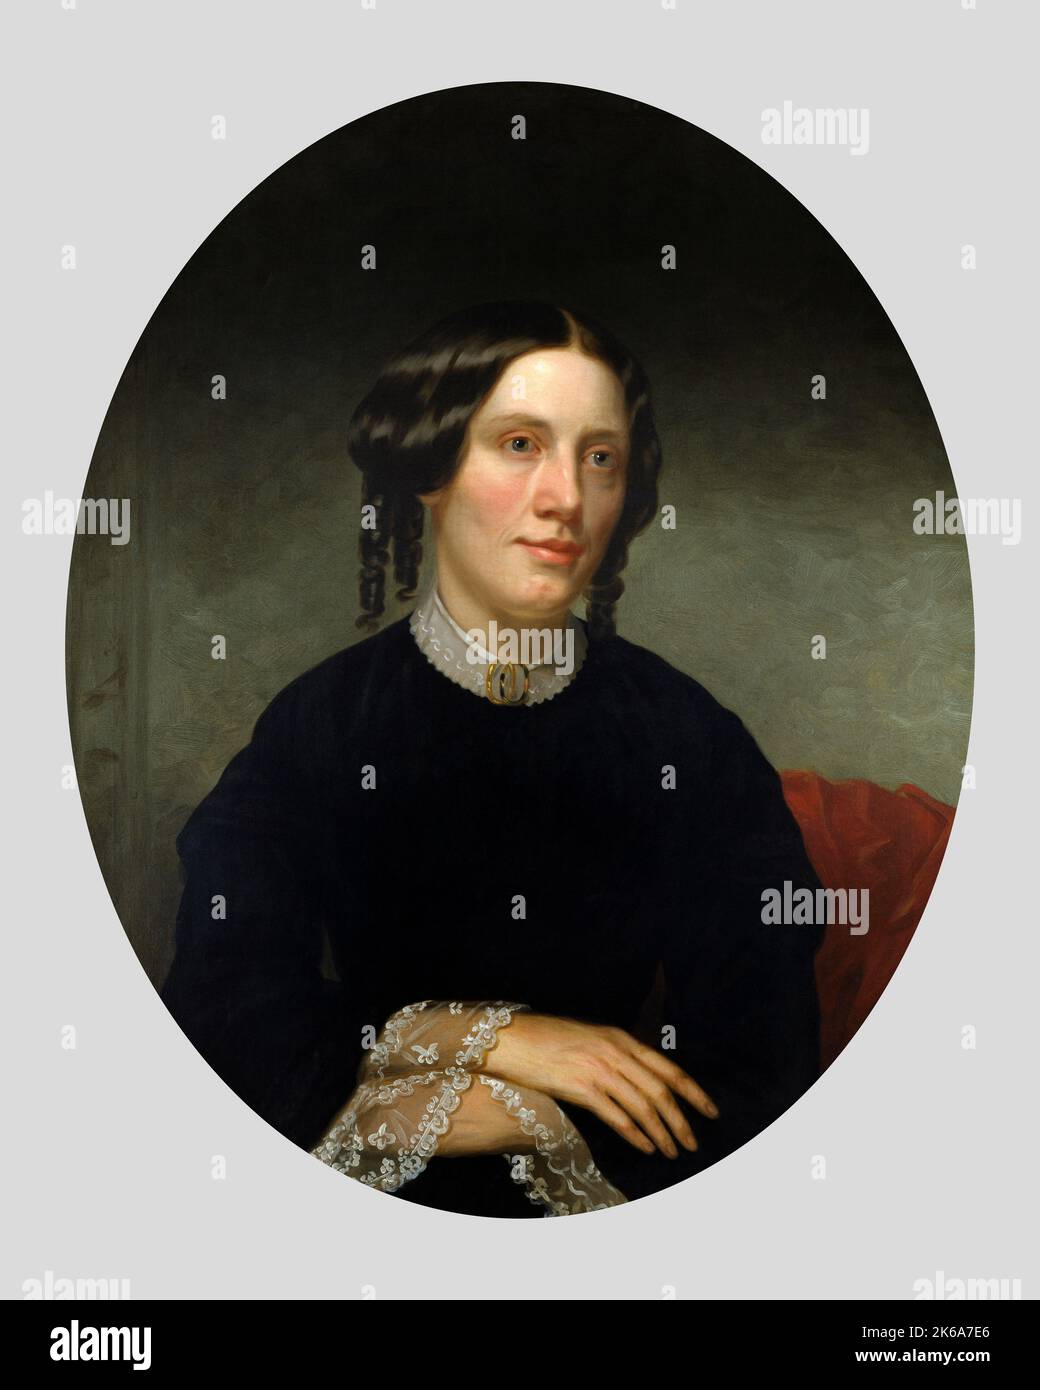 Porträt des 19.. Jahrhunderts von Harriet Beecher Stowe, einer renommierten amerikanischen Schriftstellerin. Stockfoto